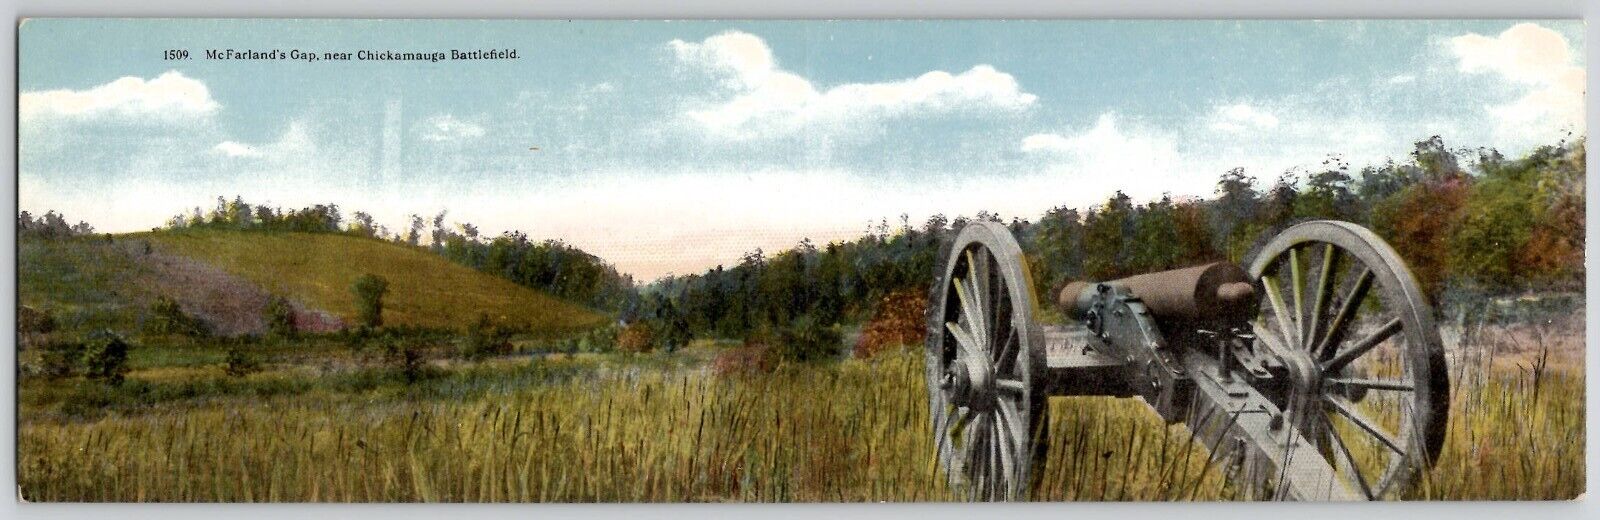 Chickamauga GA McFarland's Gap Near Chickamauga Battlefield Bi-Fold Postcard